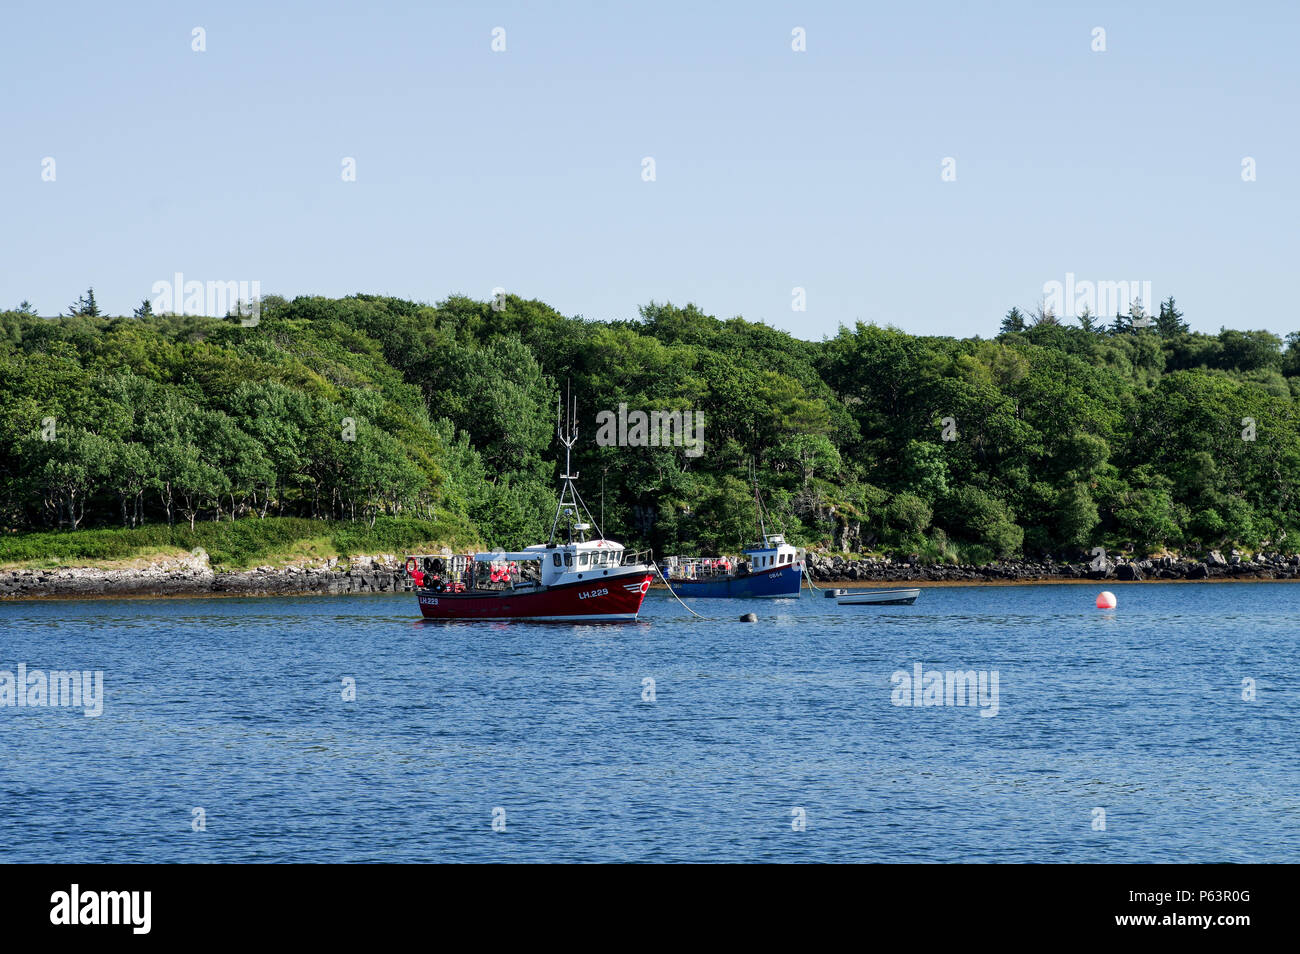 Coloratissime barche di pescatori ormeggiate sulle rive dell' Ulva island - Ebridi Interne, Scozia Foto Stock